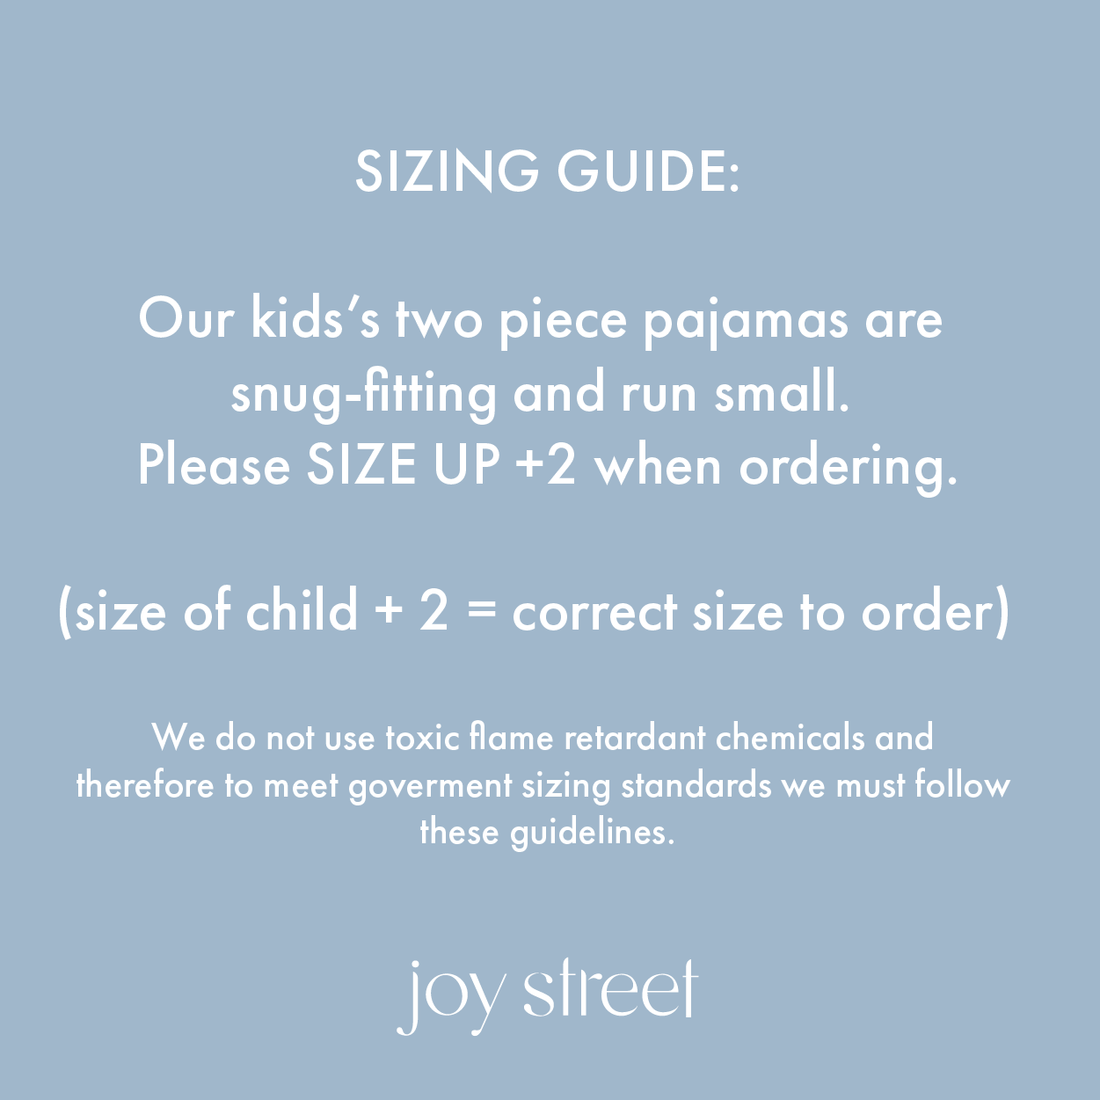 Joy Street 2 Piece Pajama Size Guide